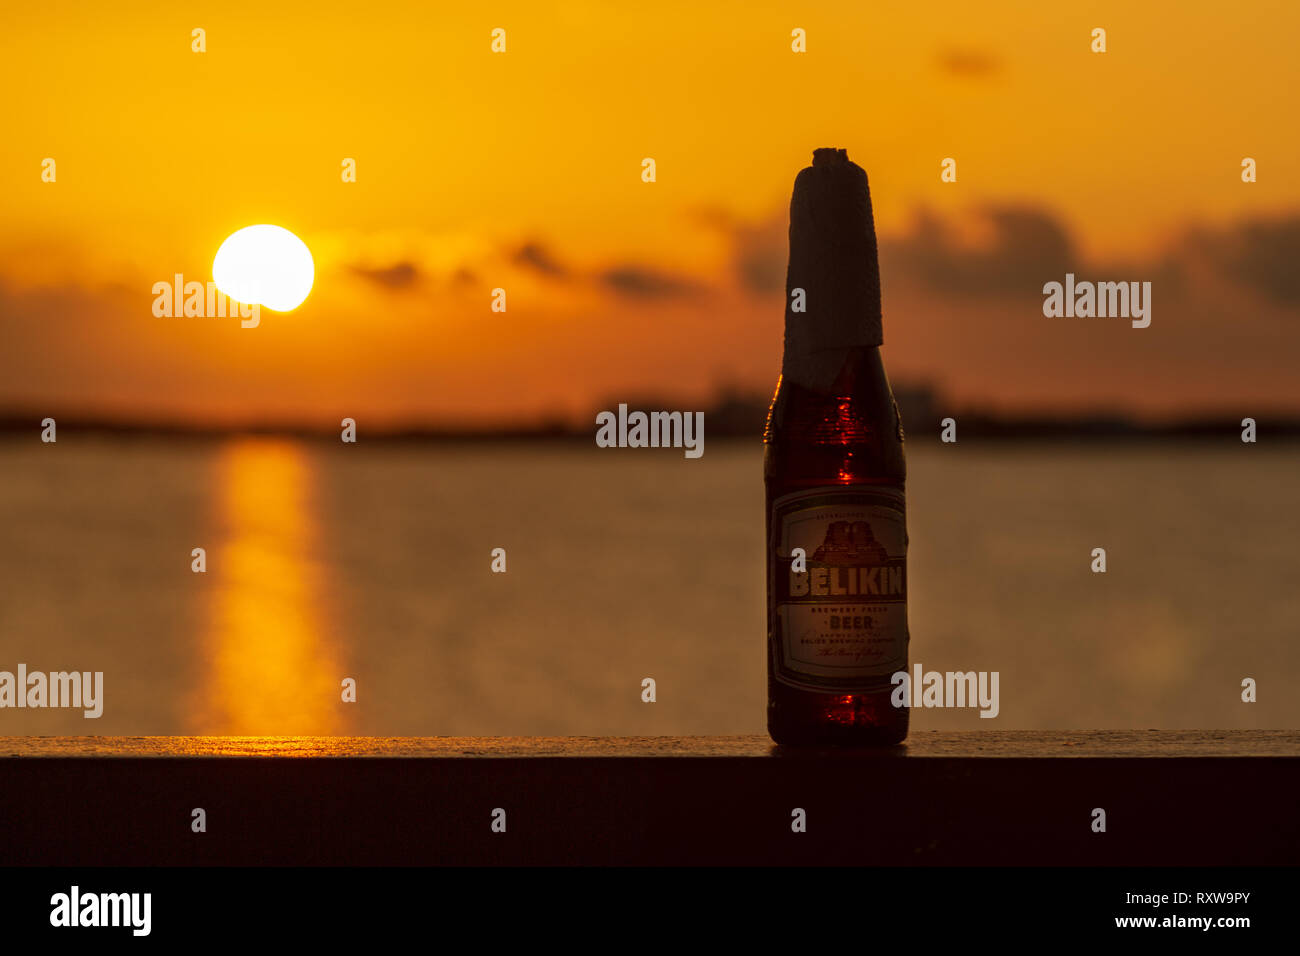 Ein eiskaltes Belikin und eine schöne Ambergris Caye Sonnenuntergang; zwei großartige Dinge über Belize. Belikin ist die größte Brauerei in Belize. Stockfoto